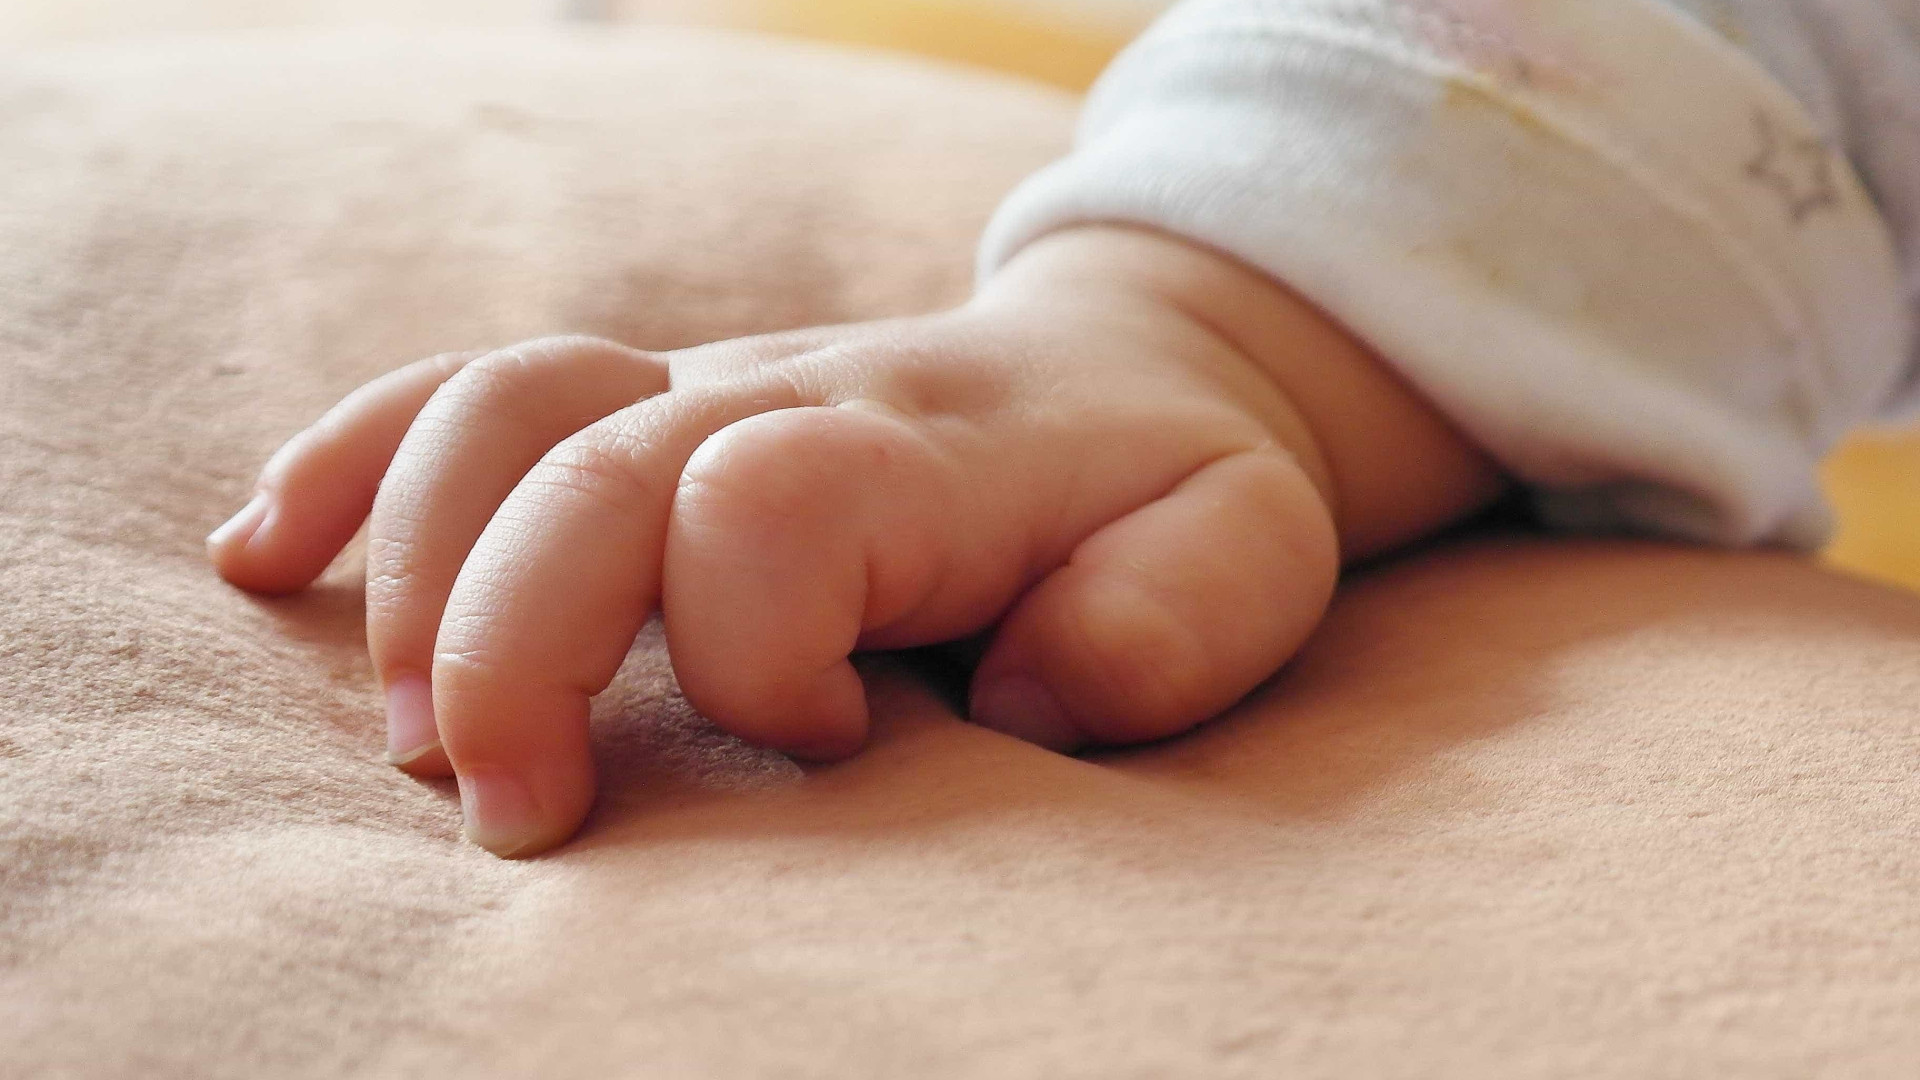 Criança tinha seis meses de idade (Foto: Ilustração / Pixabay)